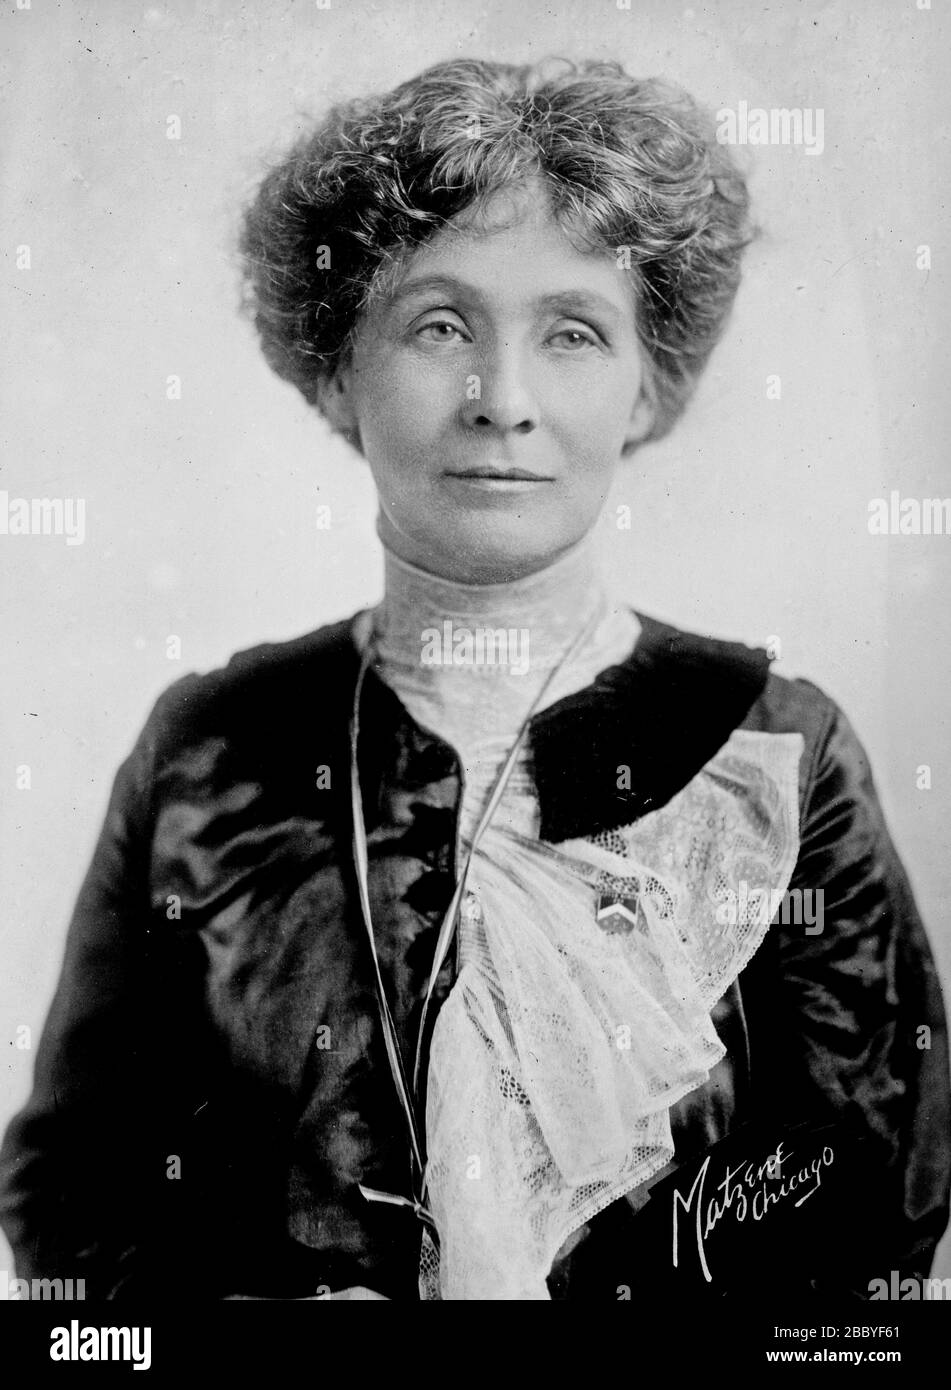 Inglese suffragista e attivista politico Emmeline Pankhurst (1858-1928), leader del movimento a suffragio femminile britannico ca. 1912 Foto Stock